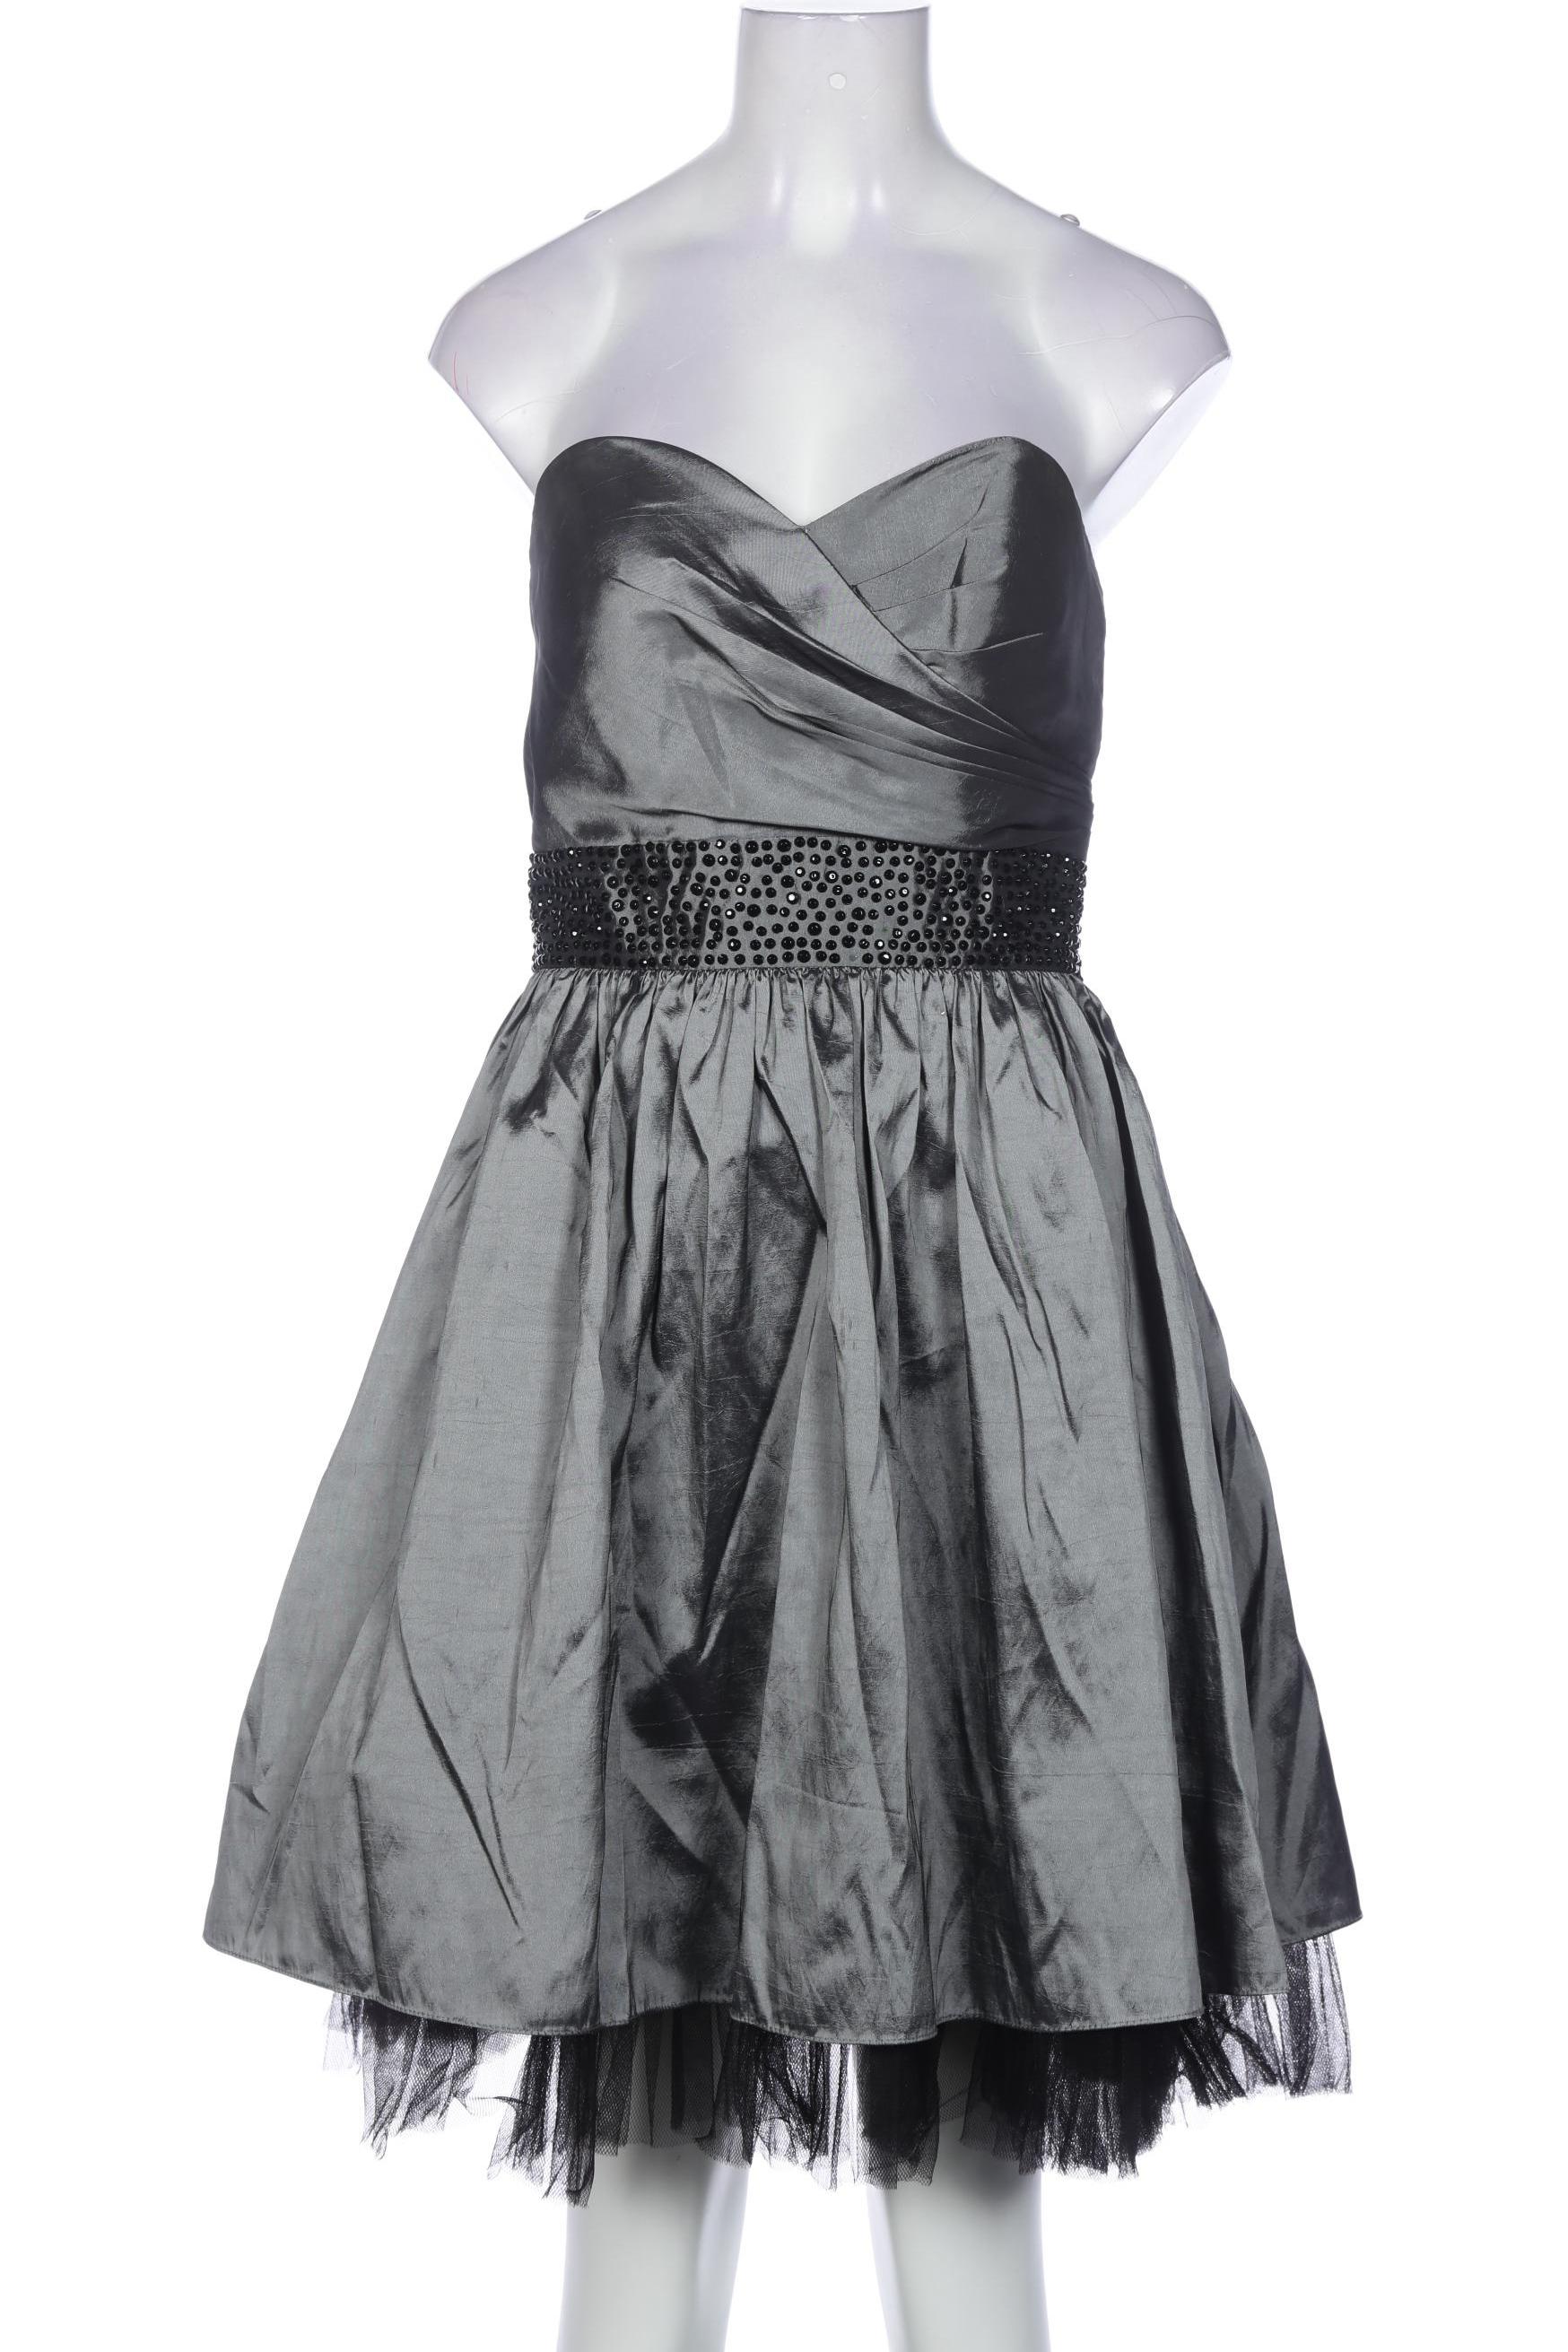 Laona Damen Kleid, grau, Gr. 34 von LAONA